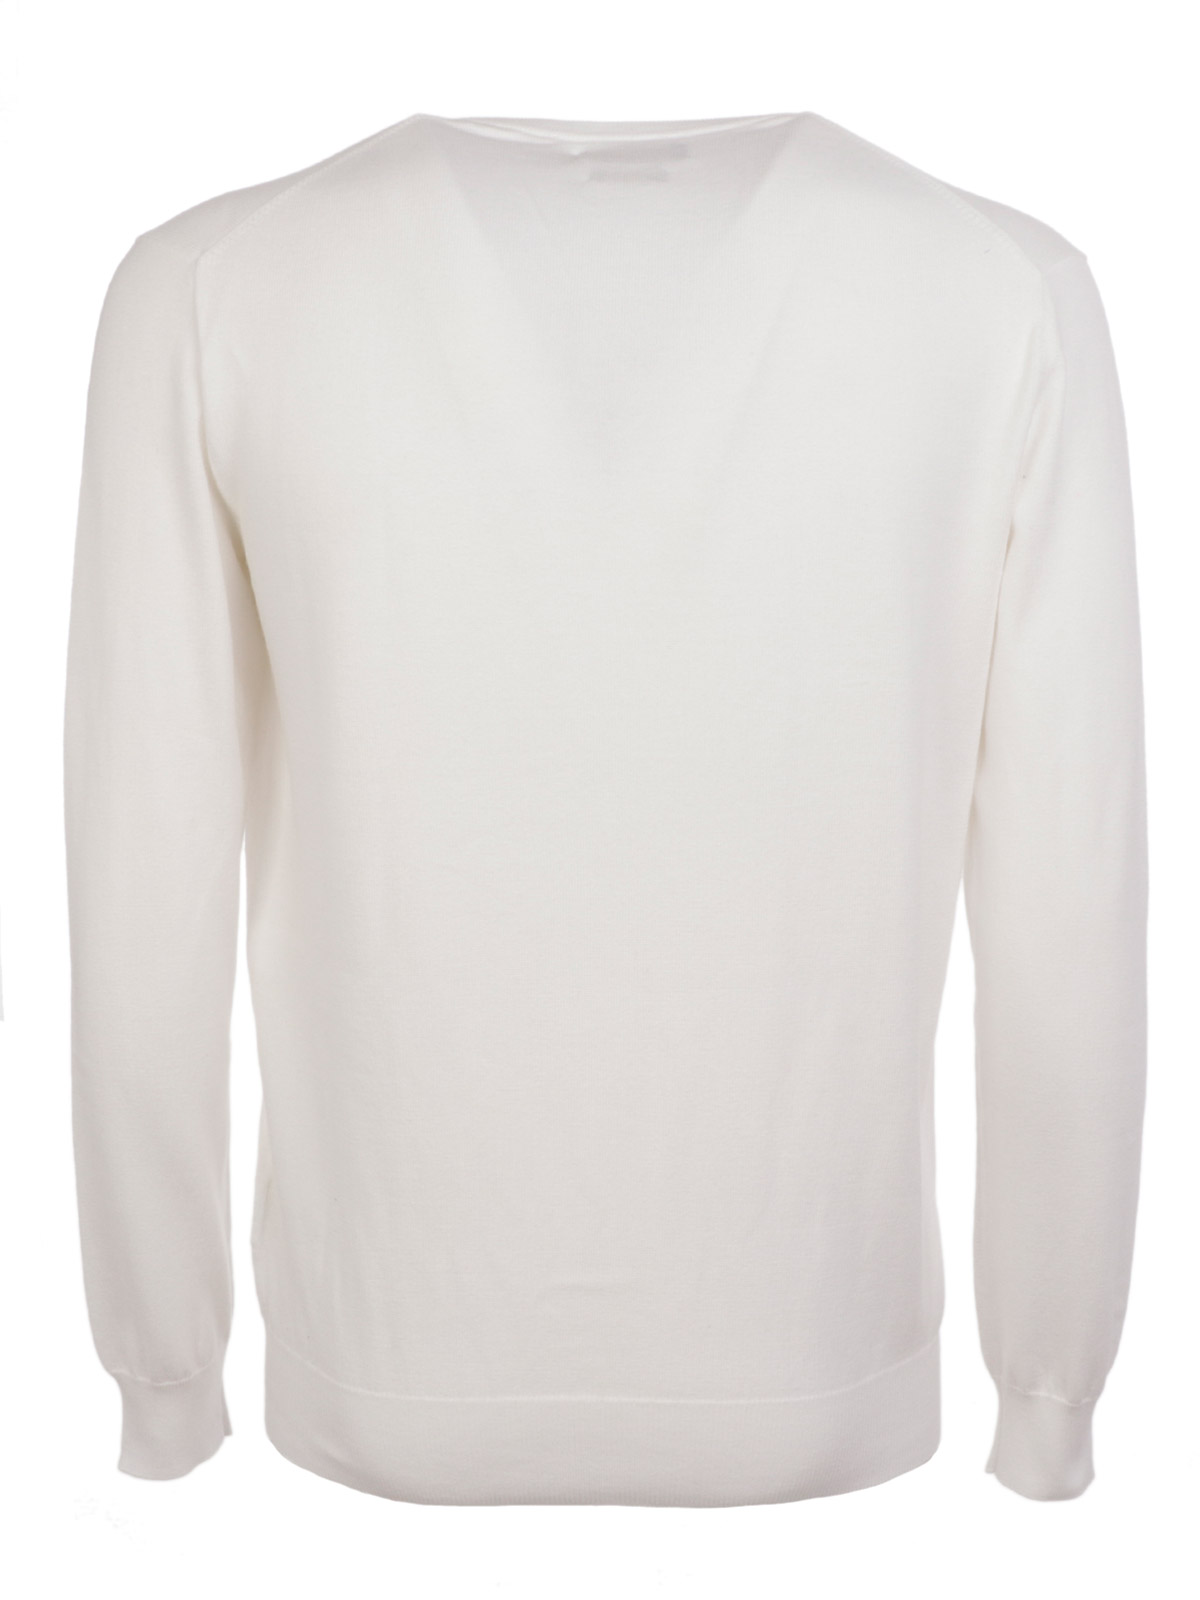 POLO RALPH LAUREN Men's V-neck Sweater White | 710689313004 | Botta & B ...